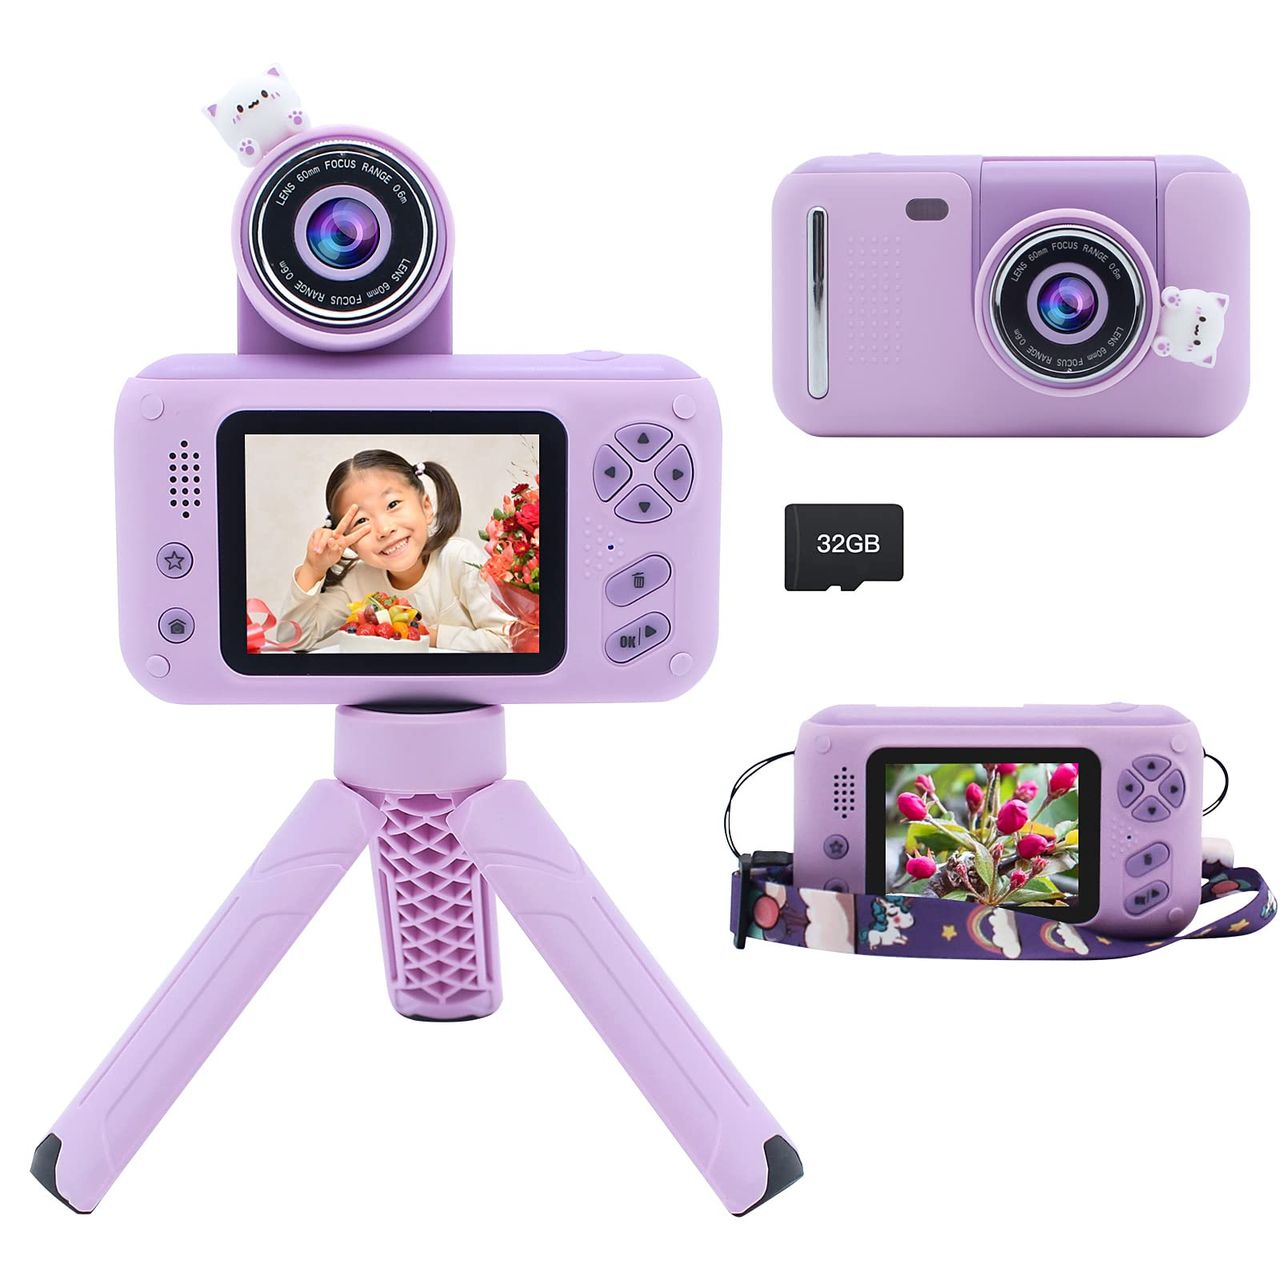 Yukicam キッズカメラ 三脚付き 子供 小学生用 2.4 インチ ディスプレイ デジタルカメラ 初心者 コンパクトカメラおもちゃ お子様へのプレゼント ビデオカメラおもちゃ 180° 回転レンズ付き 3-10歳 女の子 男の子 誕生日 クリスマス 32GB SDカード付き